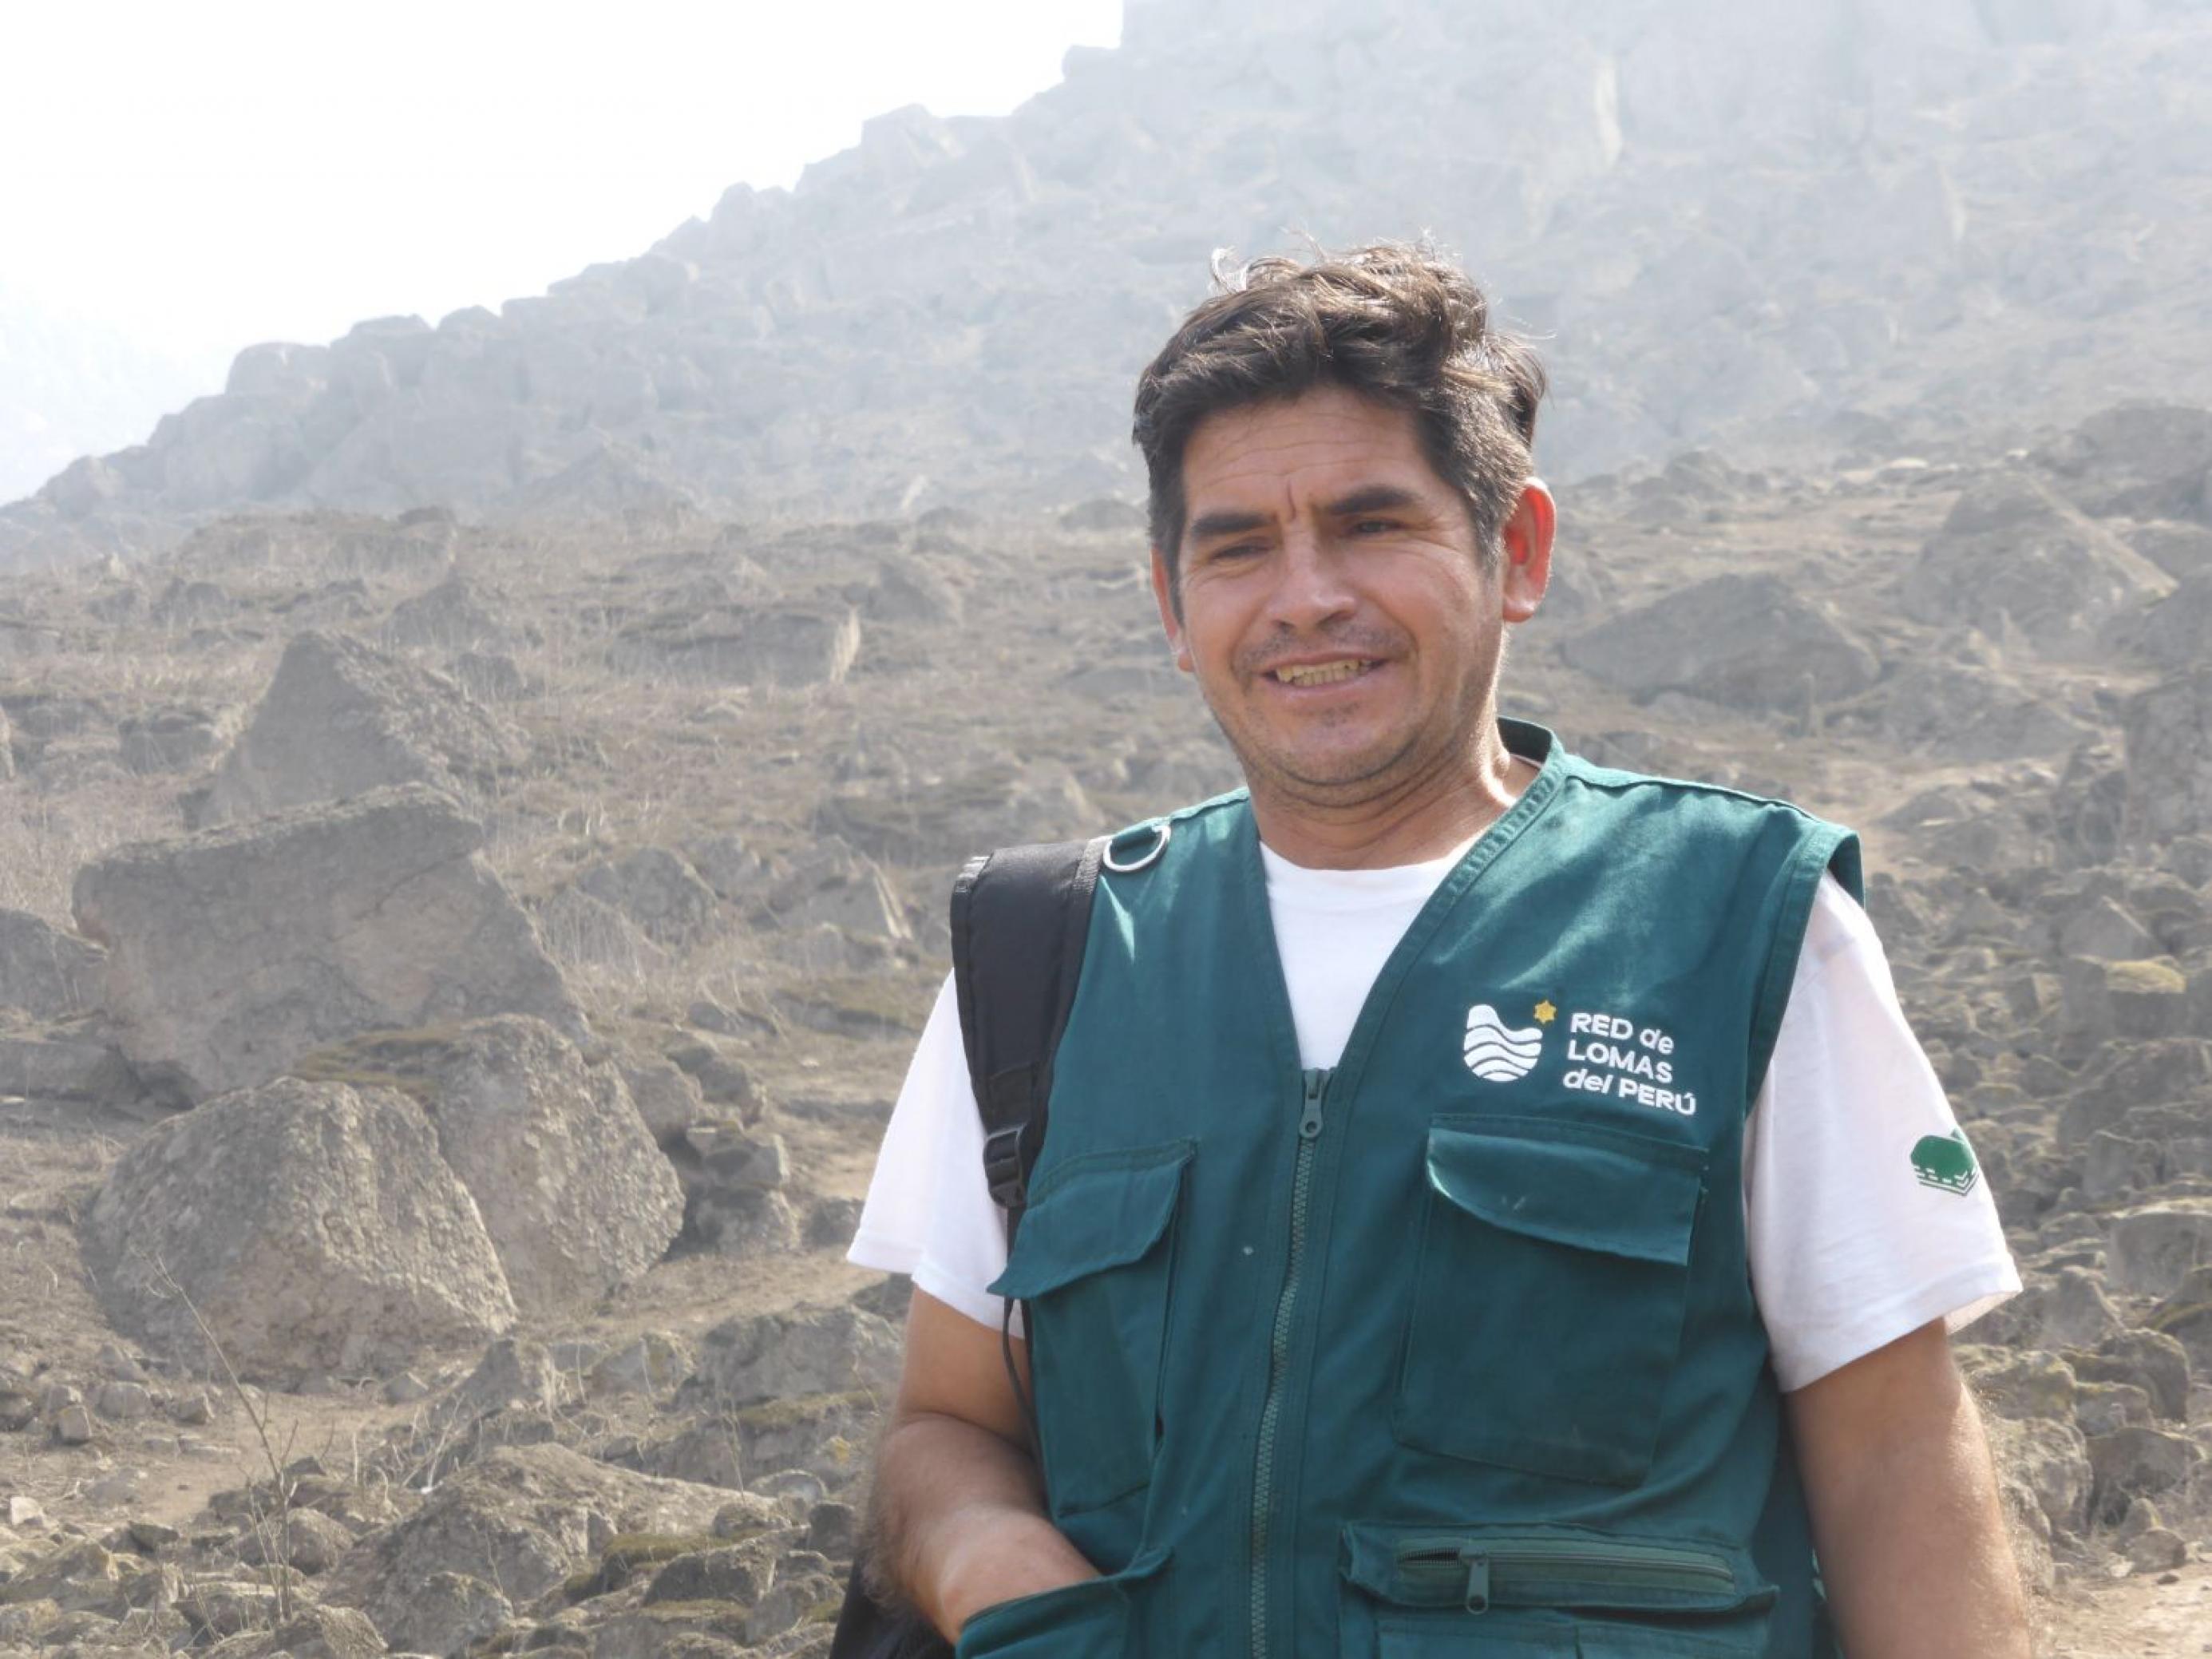 Mann, ca. 40 Jahre, mit kurzärmligem weissen T-Shirt und grüner Jacke, im Hintergrund eine bergige Steinlandschaft